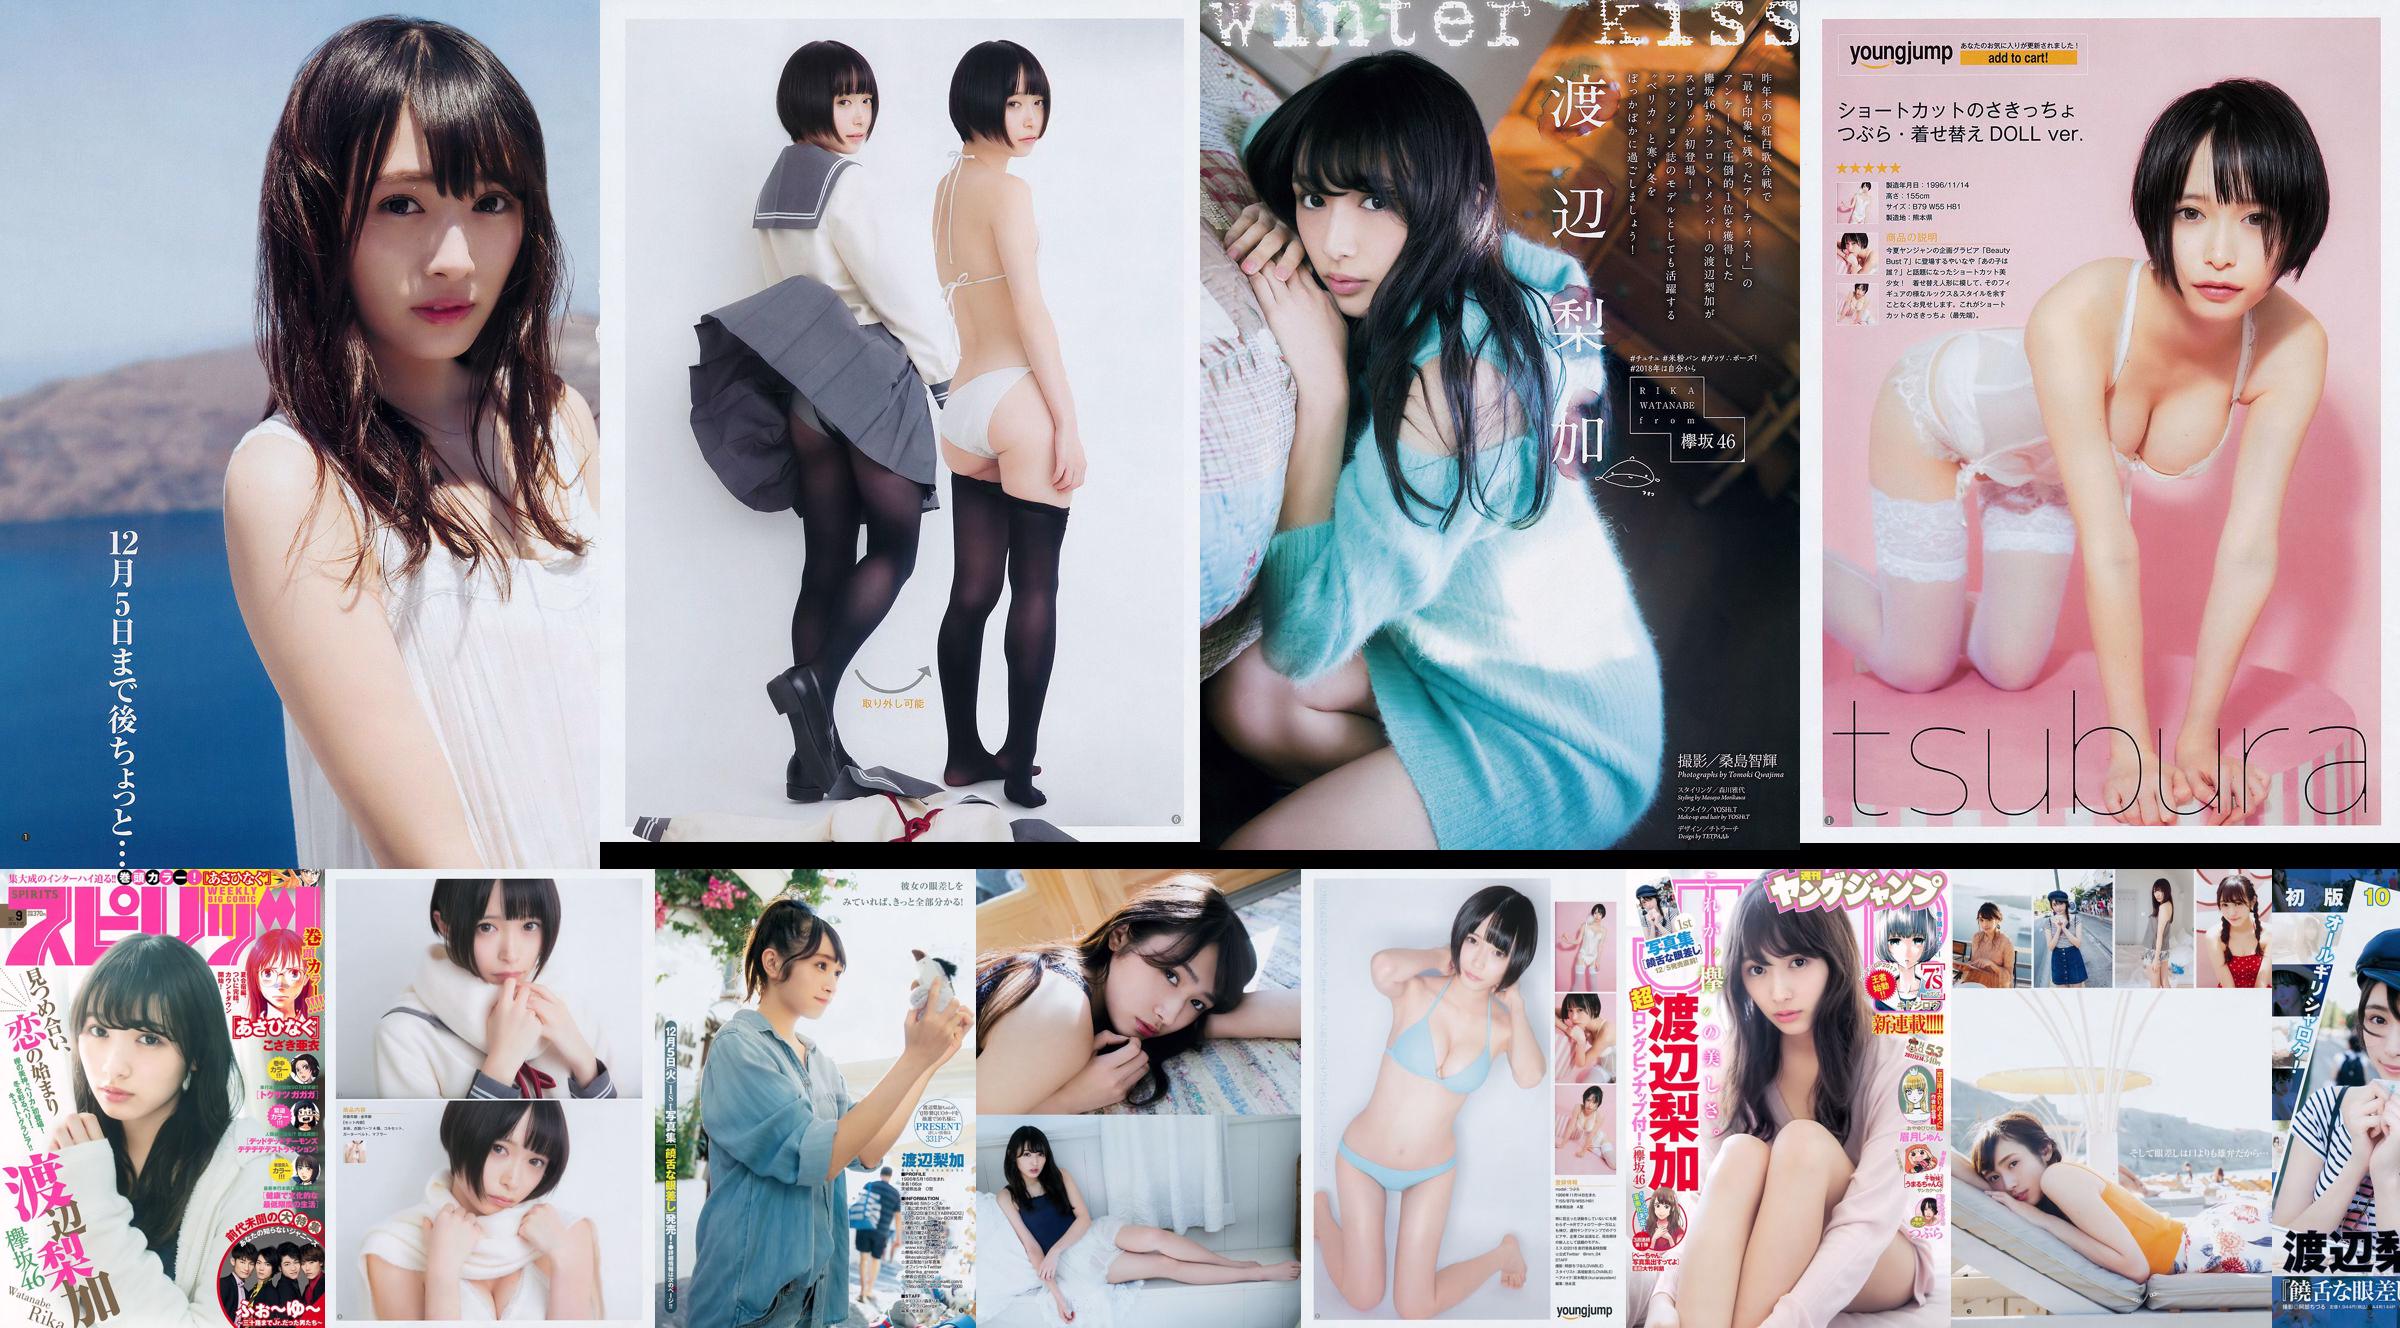 [Wöchentliche große Comic-Geister] Rika Watanabe 2018 No.09 Photo Magazine No.3d799a Seite 1